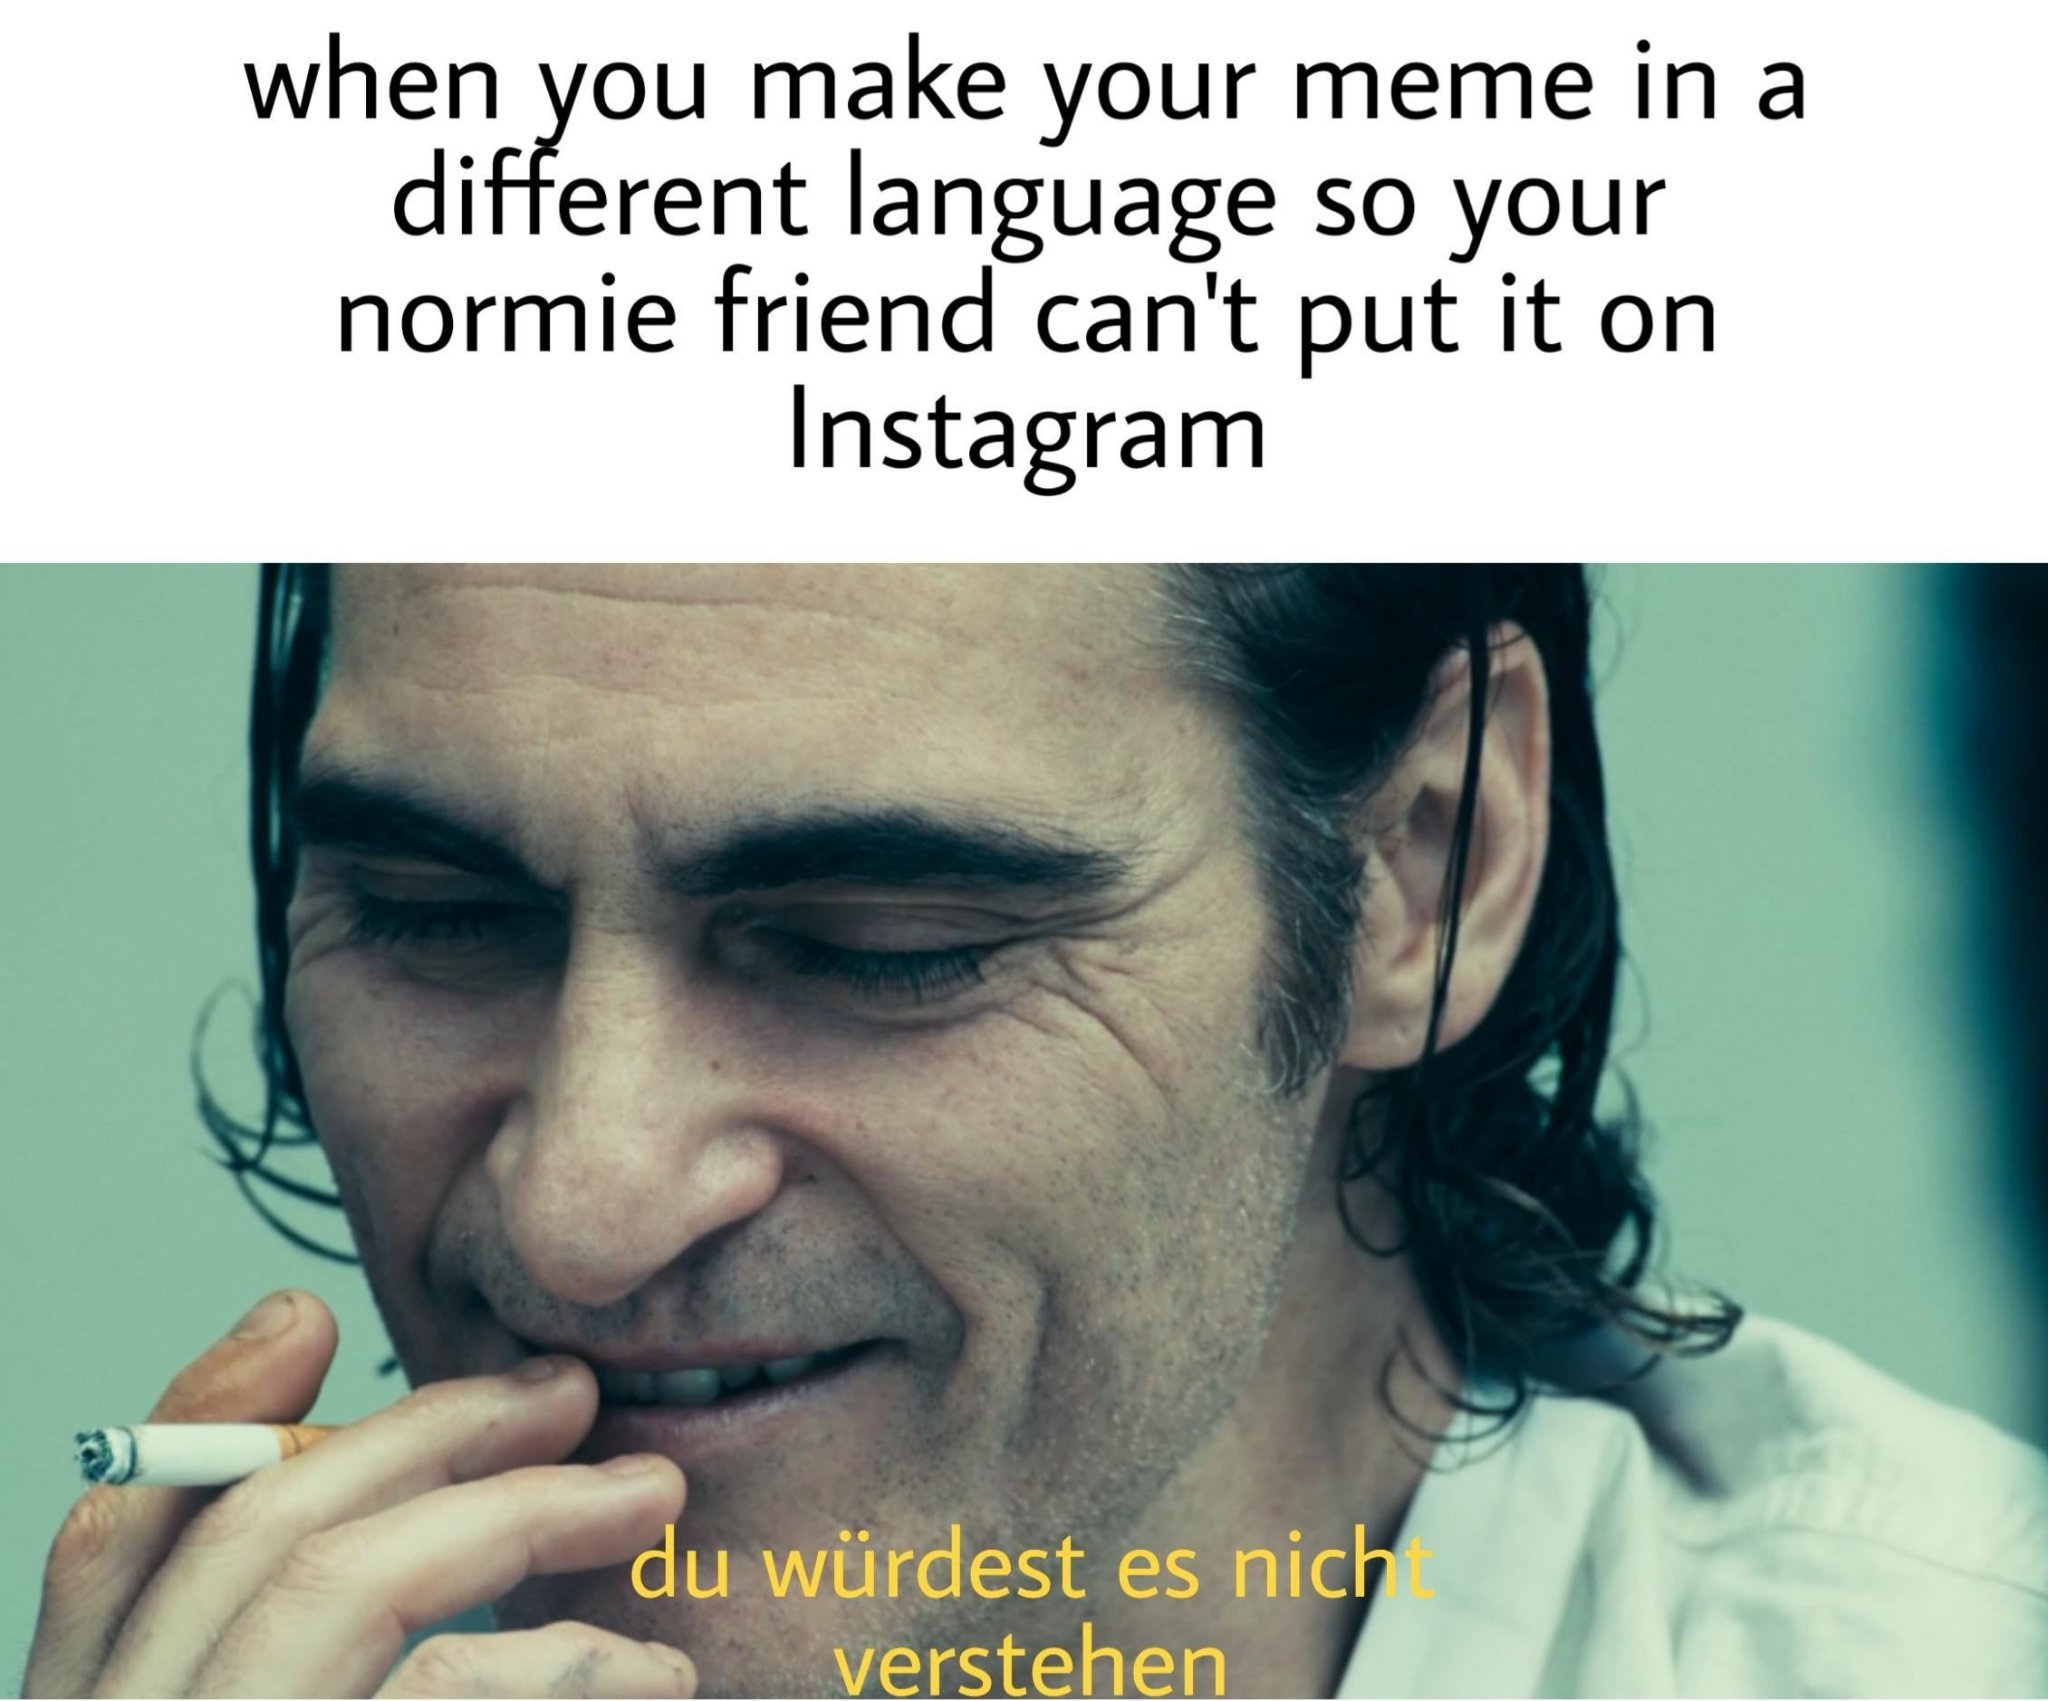 normie friend - meme